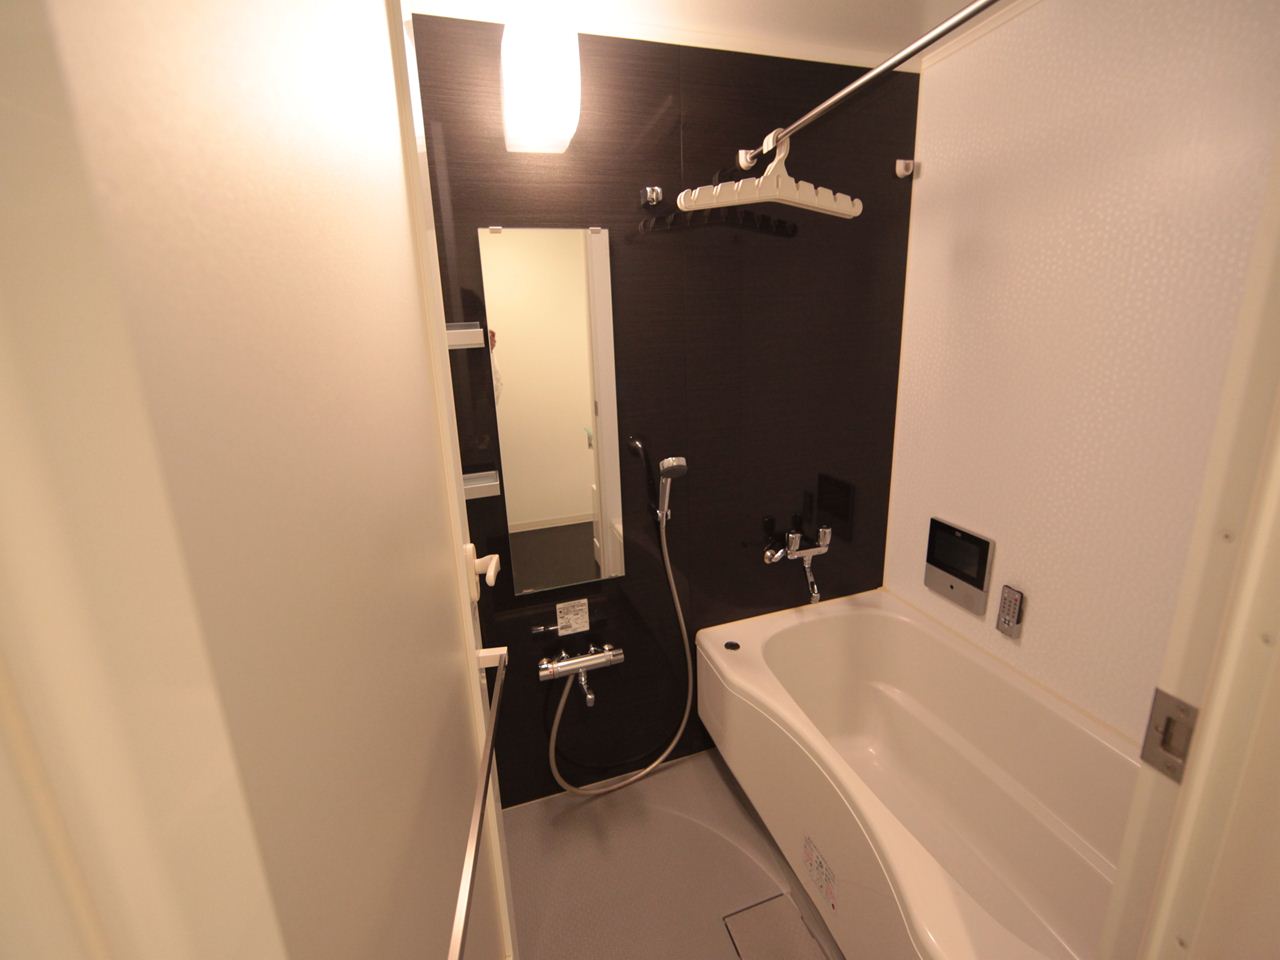 Bath. Bathroom heating dryer Bathing with bathroom TV